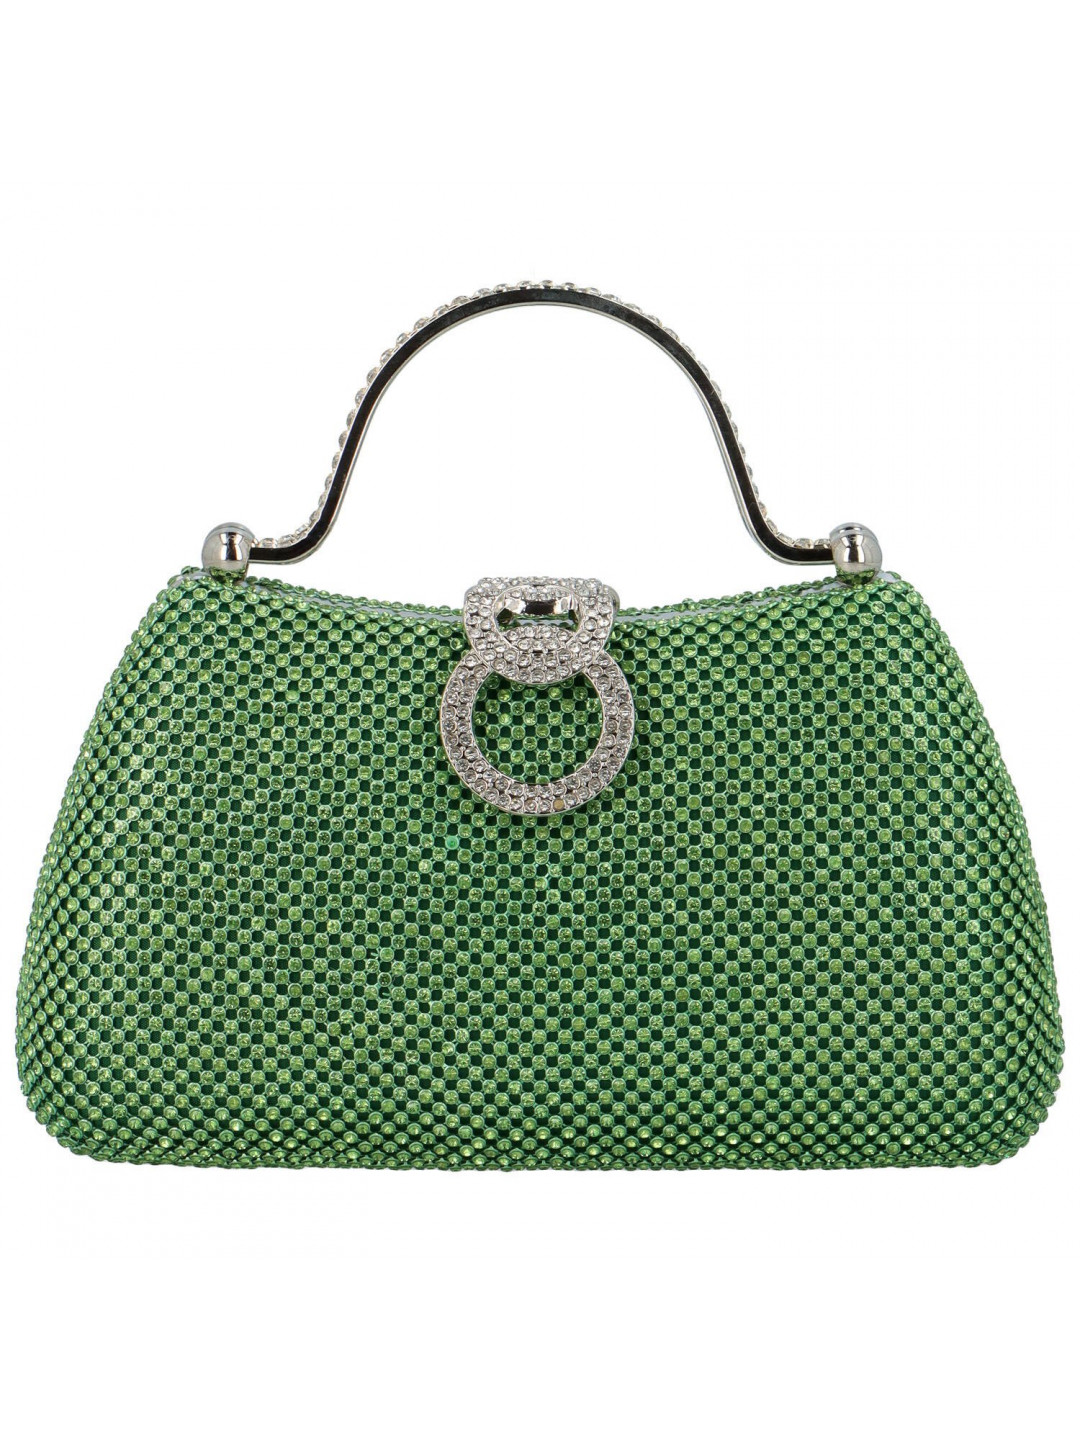 Luxusní dámská kabelka do ruky MOON Keisha zelená